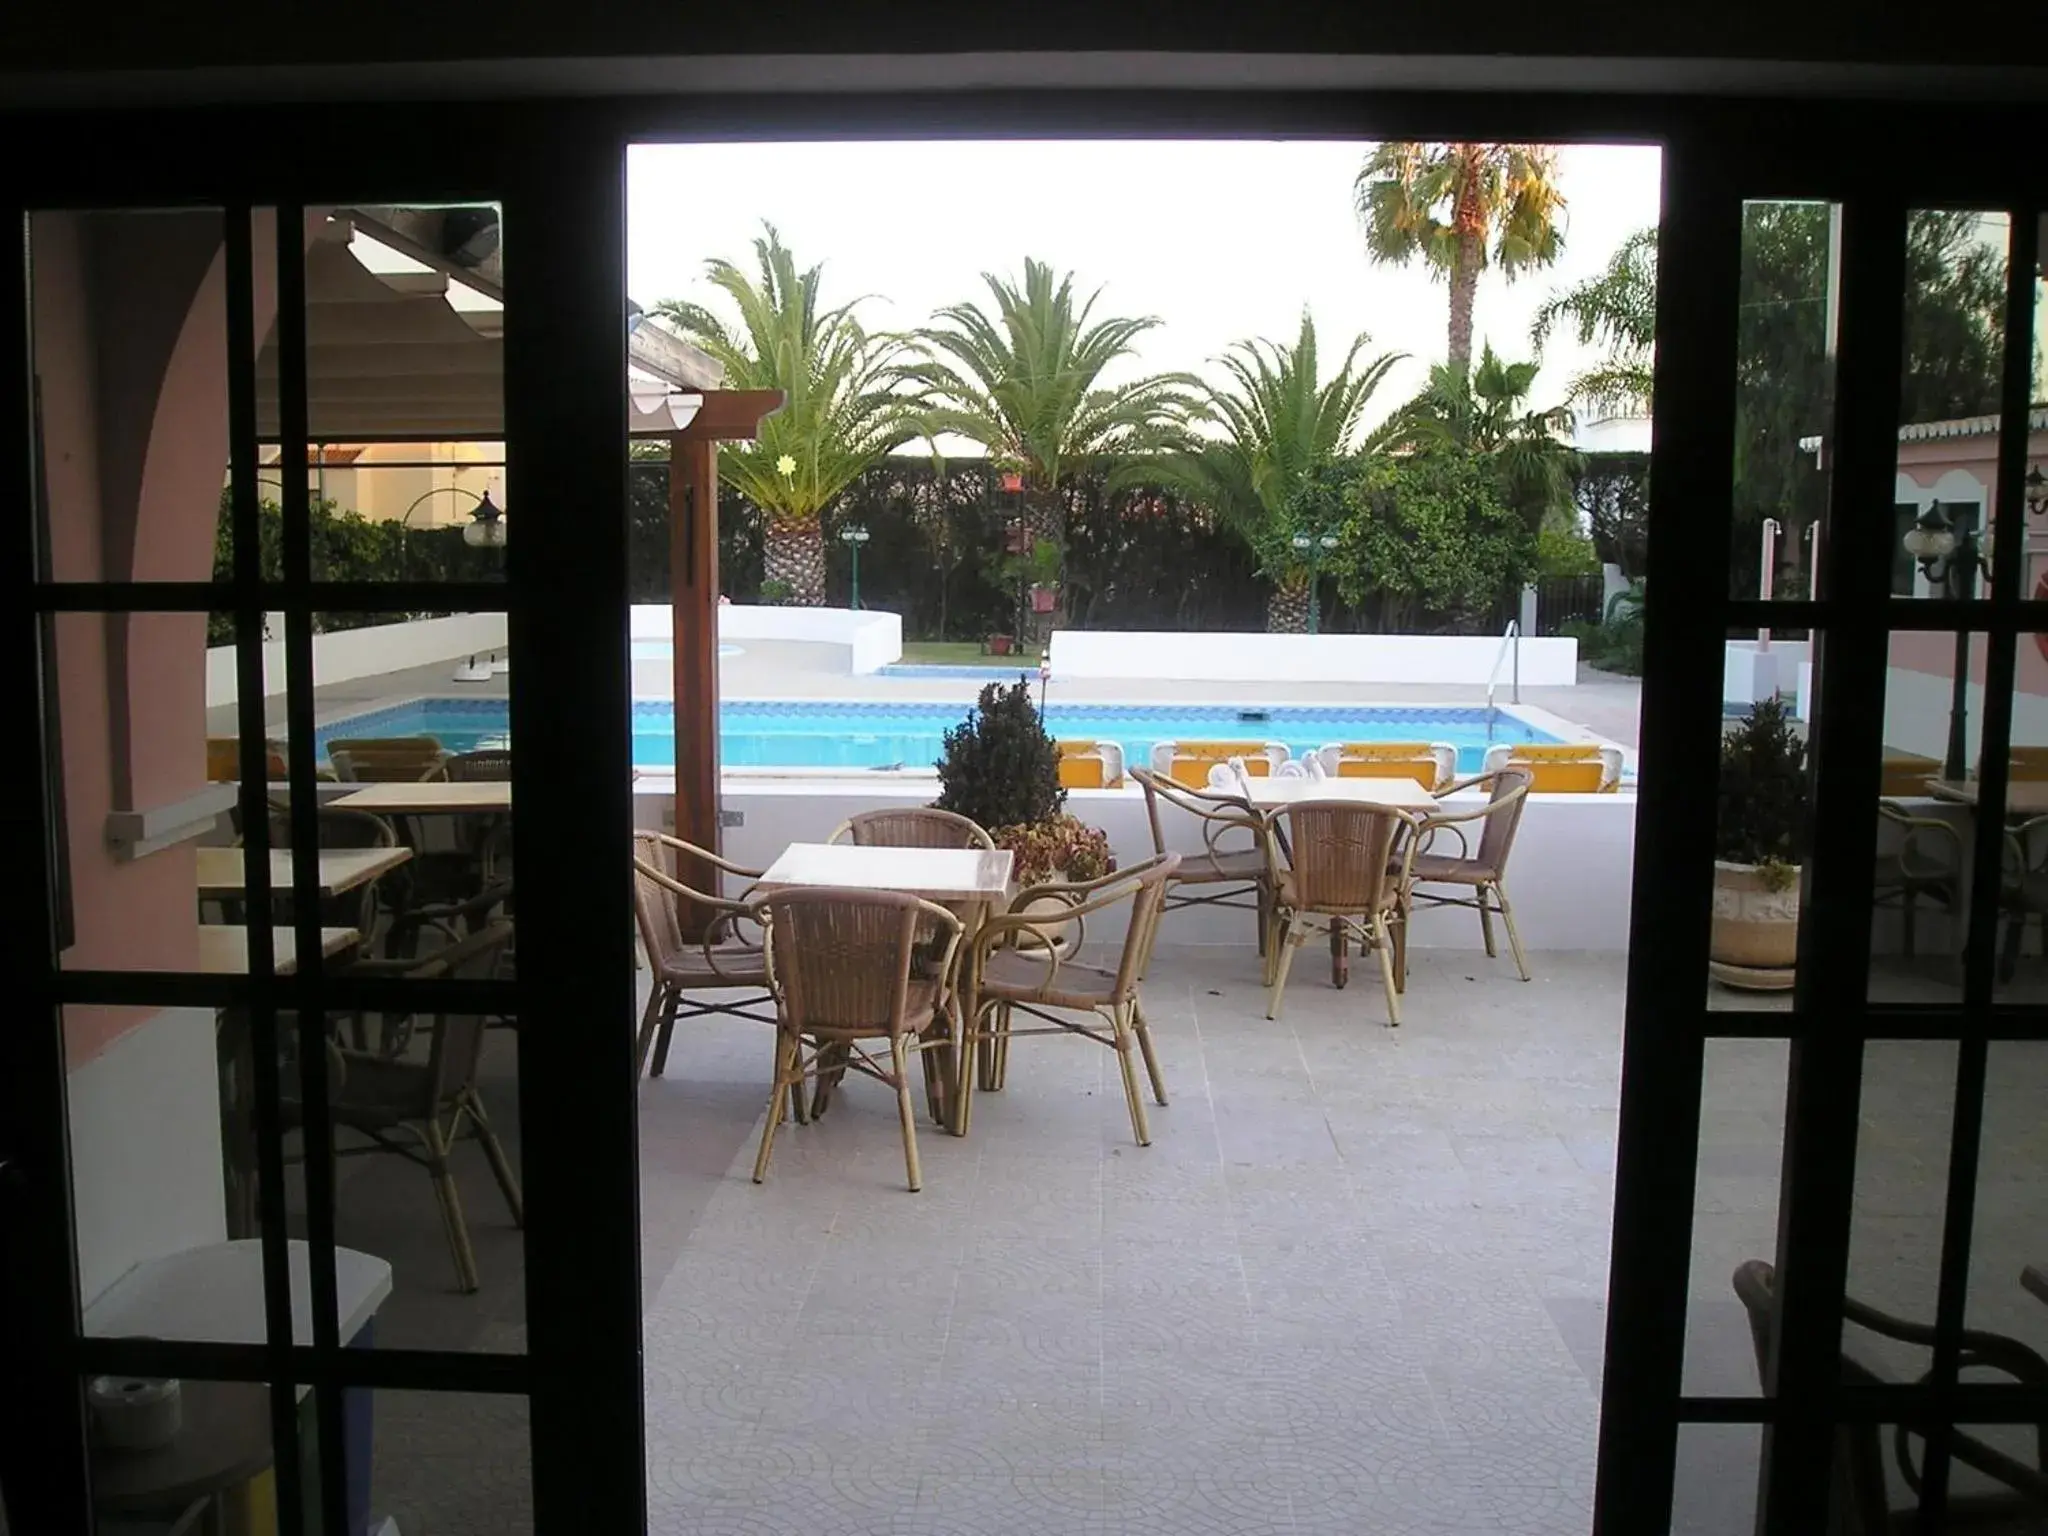 Balcony/Terrace, Swimming Pool in Solar de Mos Hotel